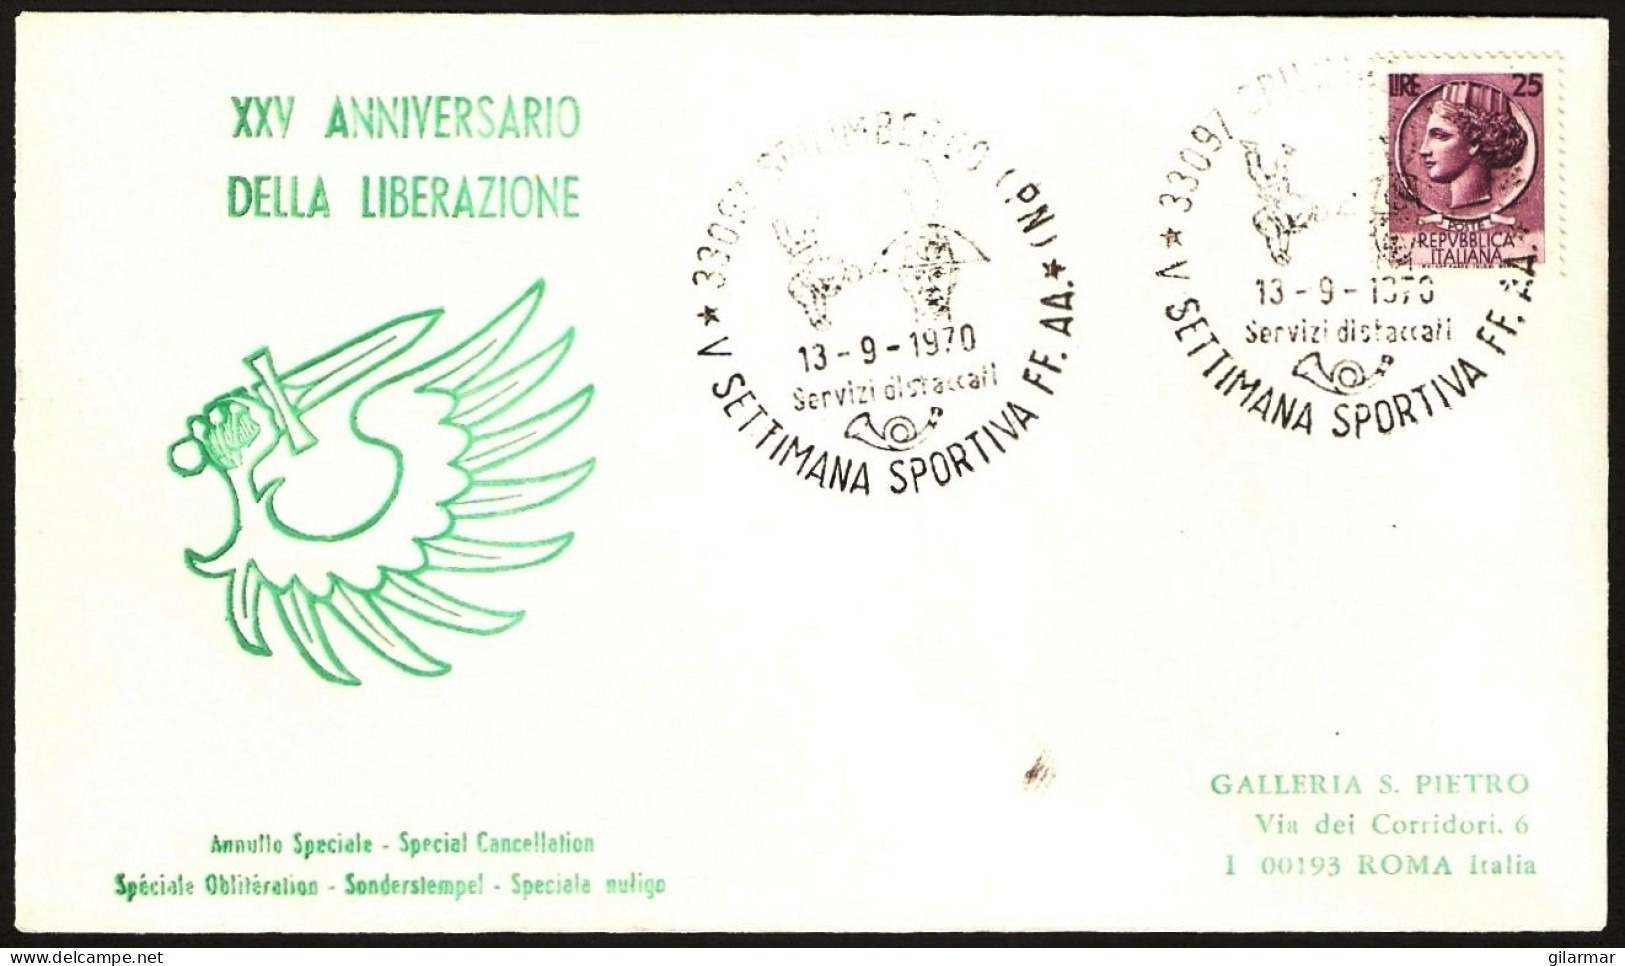 JUDO - ITALIA SPILIMBERGO (PN) 1970 - SETTIMANA SPORTIVA FF.AA. - UN PO' CHIARO - M - Judo